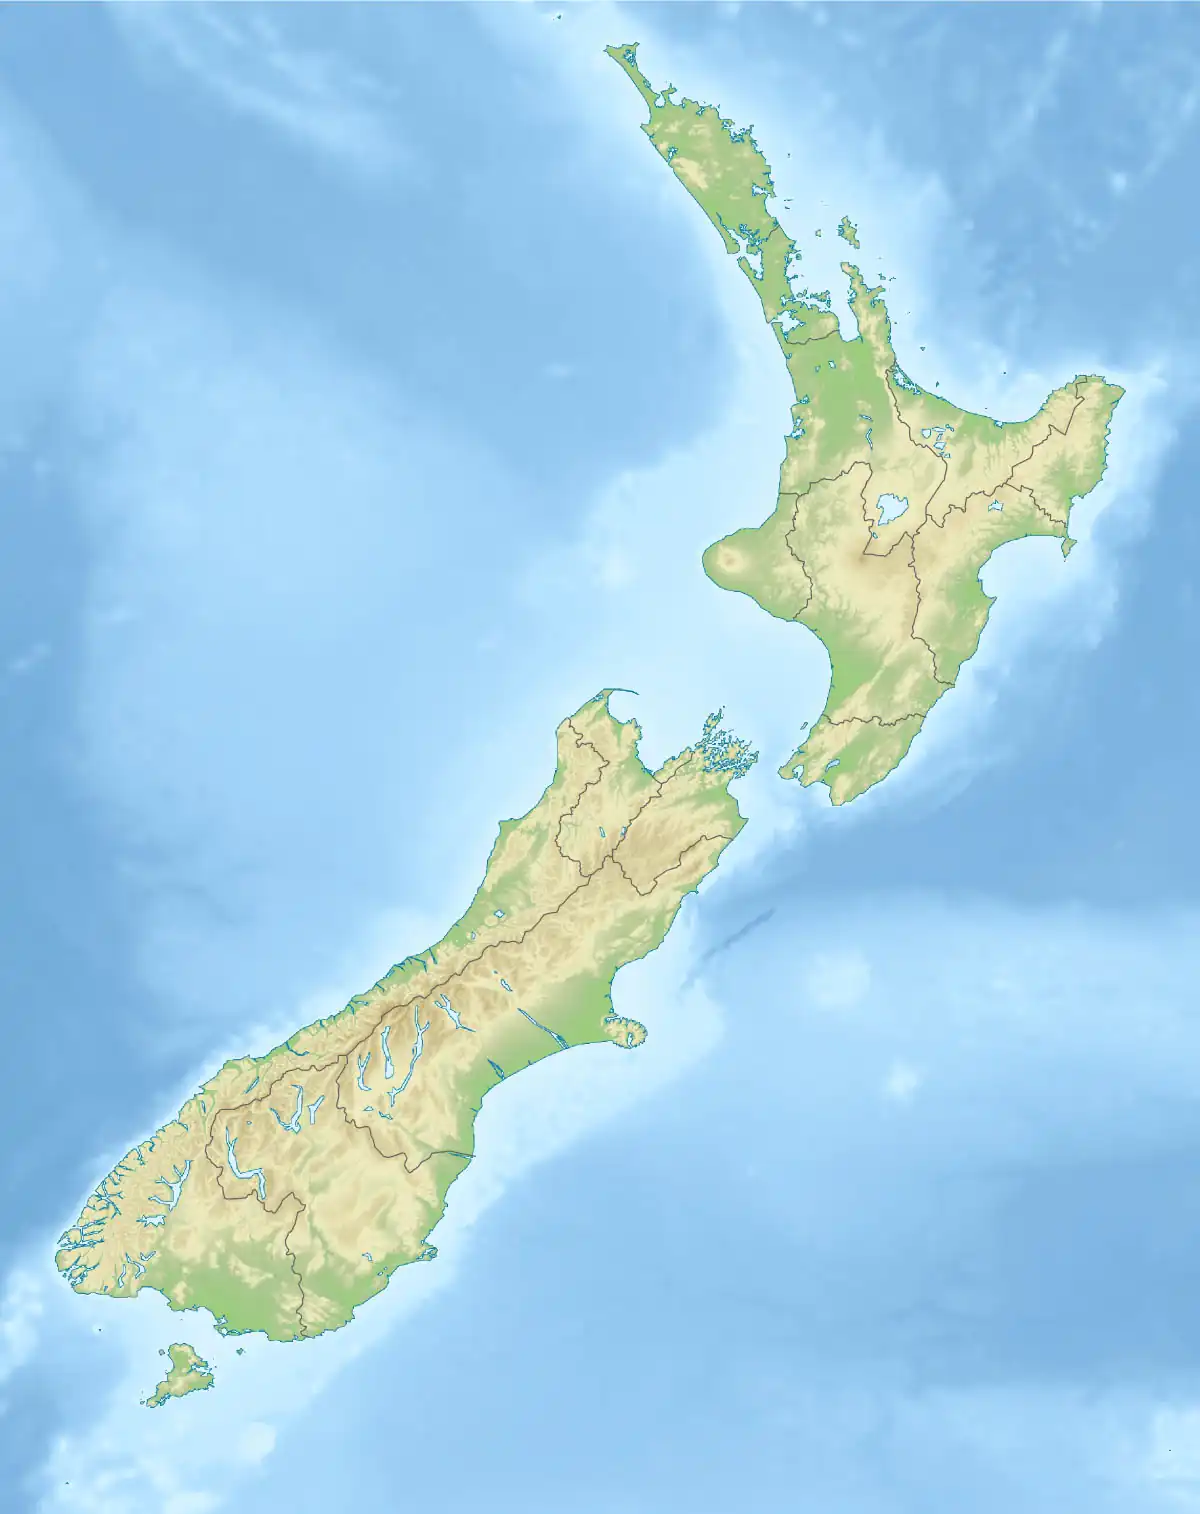 Te Koko-o-Kupe / Cloudy Bay is located in New Zealand